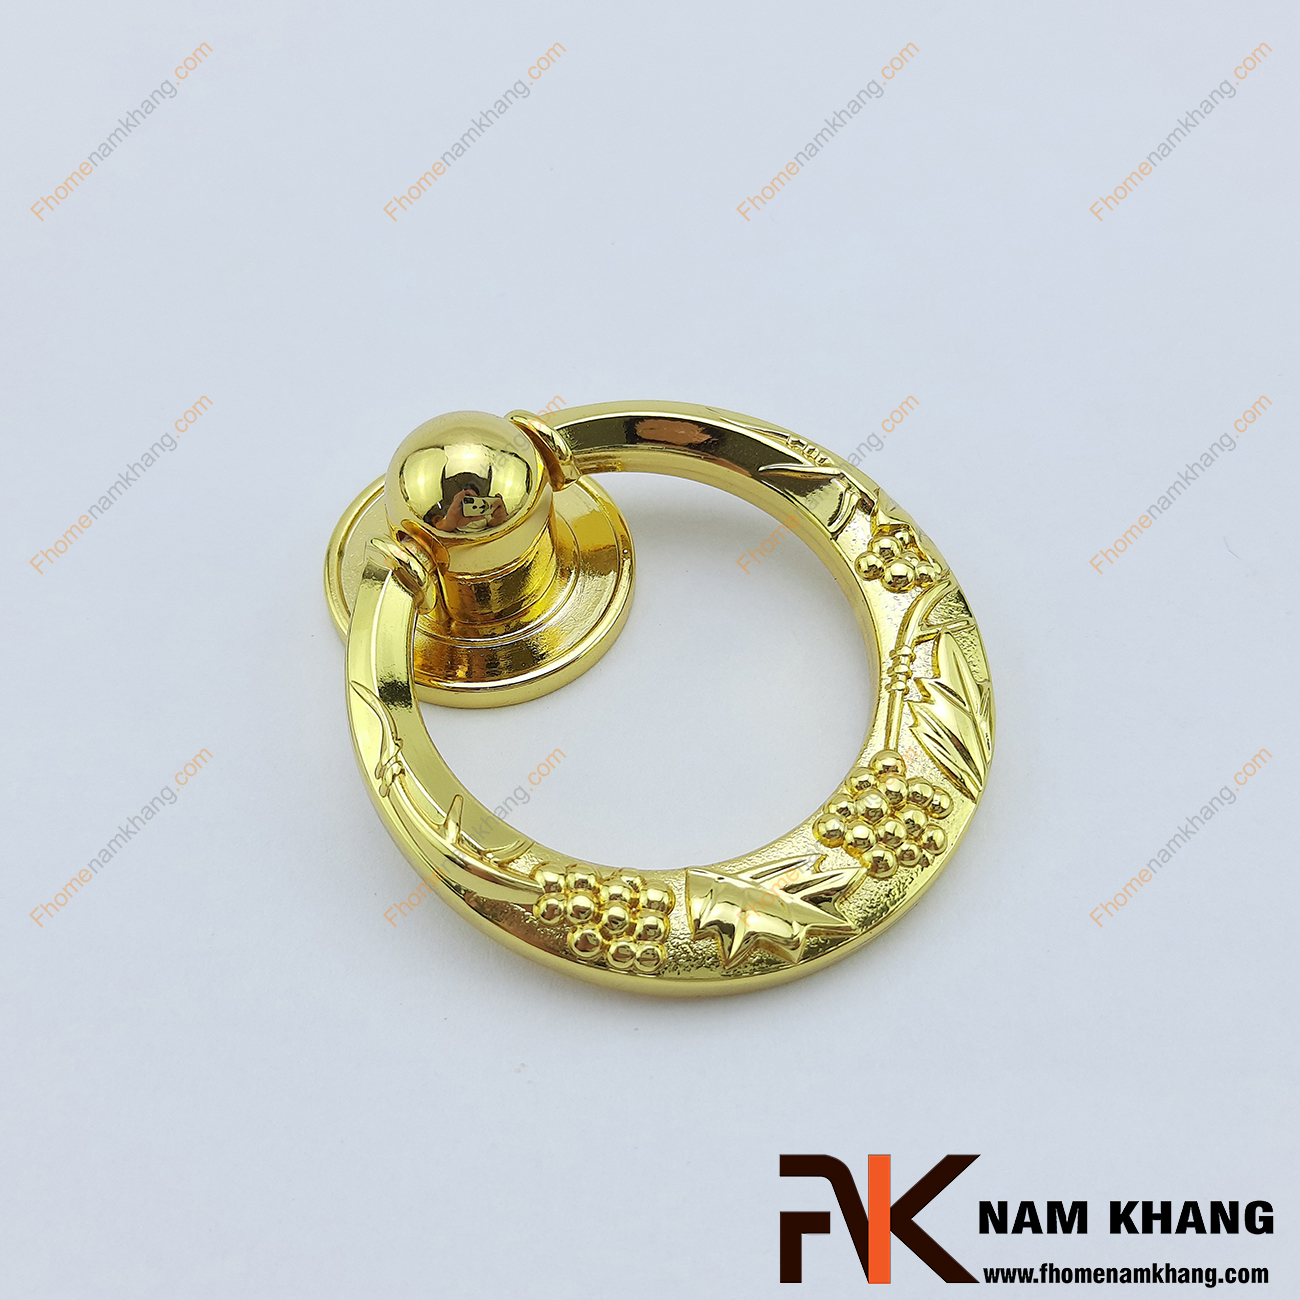 Núm tay nắm tủ mạ vàng NK068-V có thiết kế dạng vòng mạ vàng. Sản phẩm được chế tạo từ hợp kim chất lượng cao, có độ bền tốt và chống trầy xước, chống phai màu.